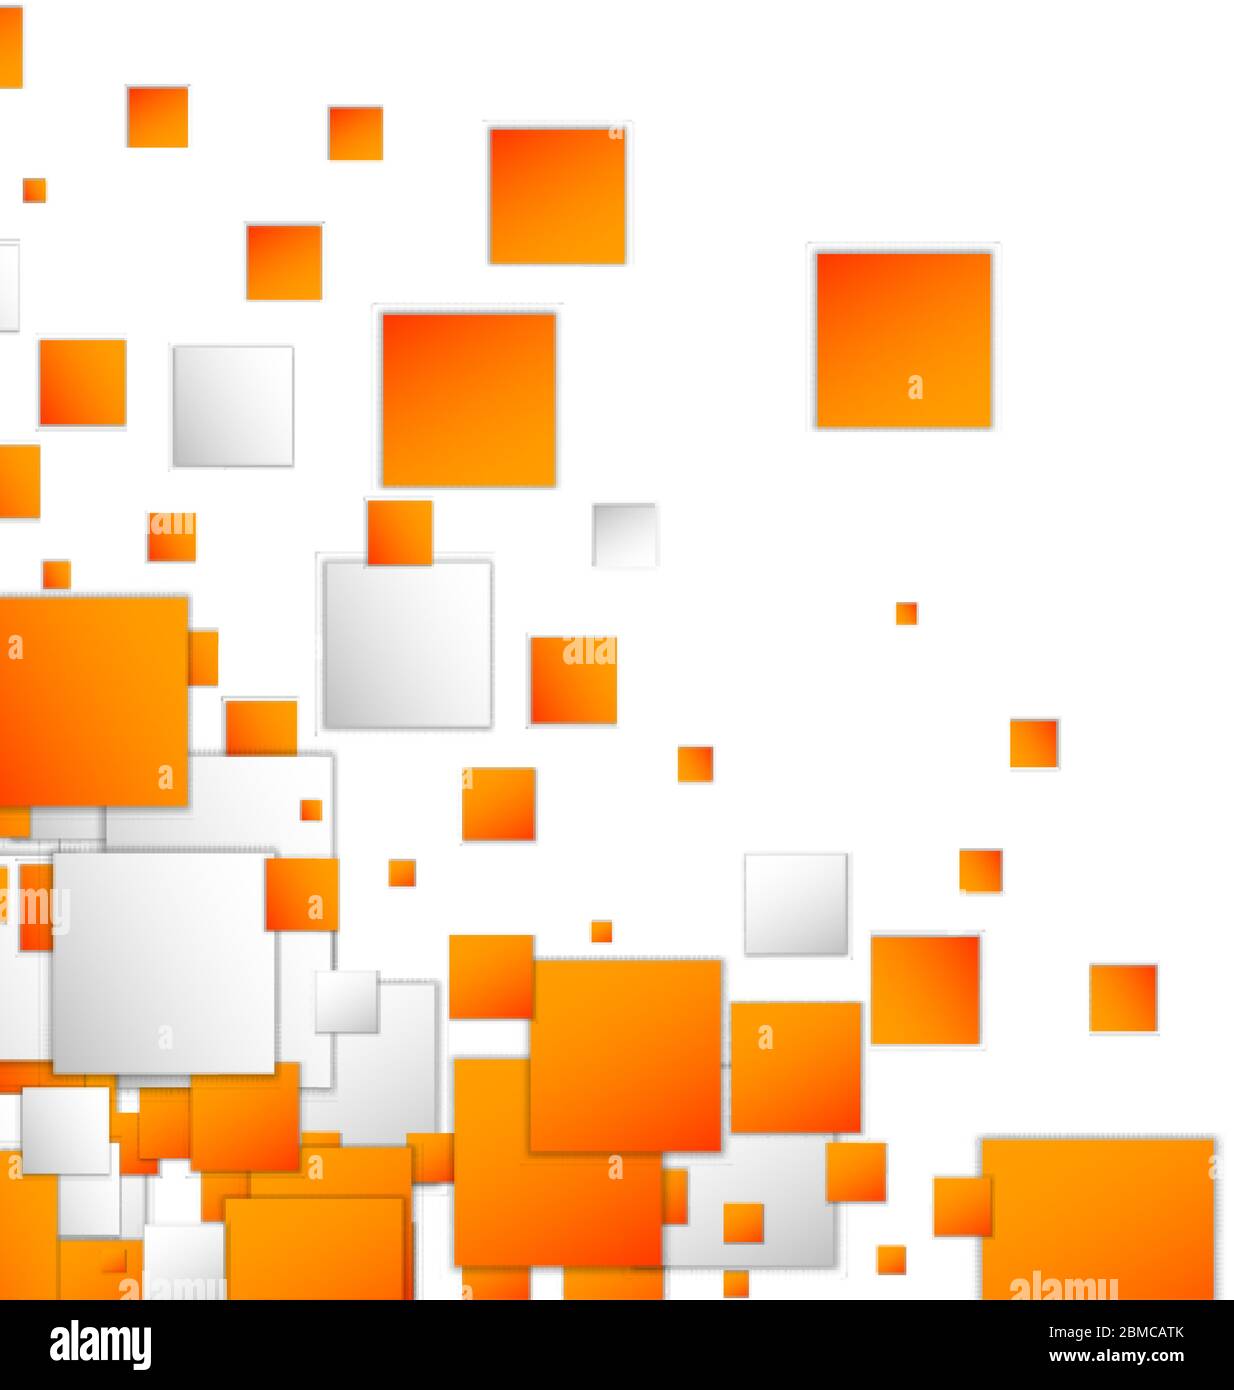 Thiết kế banner trừu tượng hình vuông màu cam sáng sẽ đem đến cho bạn một trải nghiệm đầy mới lạ. Hãy tưởng tượng những hình vuông màu sắc tươi sáng được thắp sáng, và tất cả được biểu thị dưới dạng vector hình học đẹp mắt.